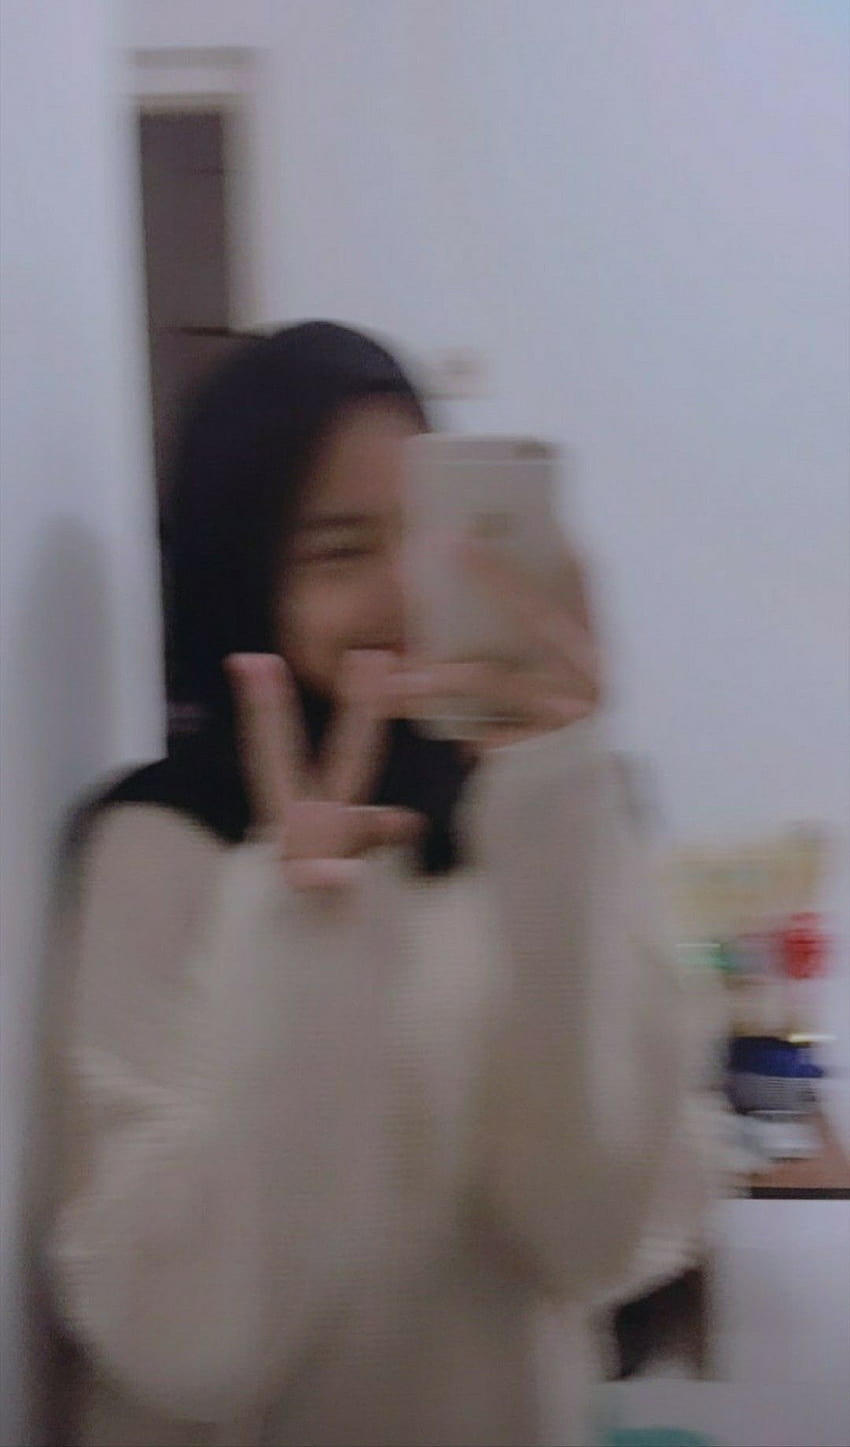 Mirror selfie hijab in 2020, iphone mirror selfies HD phone wallpaper